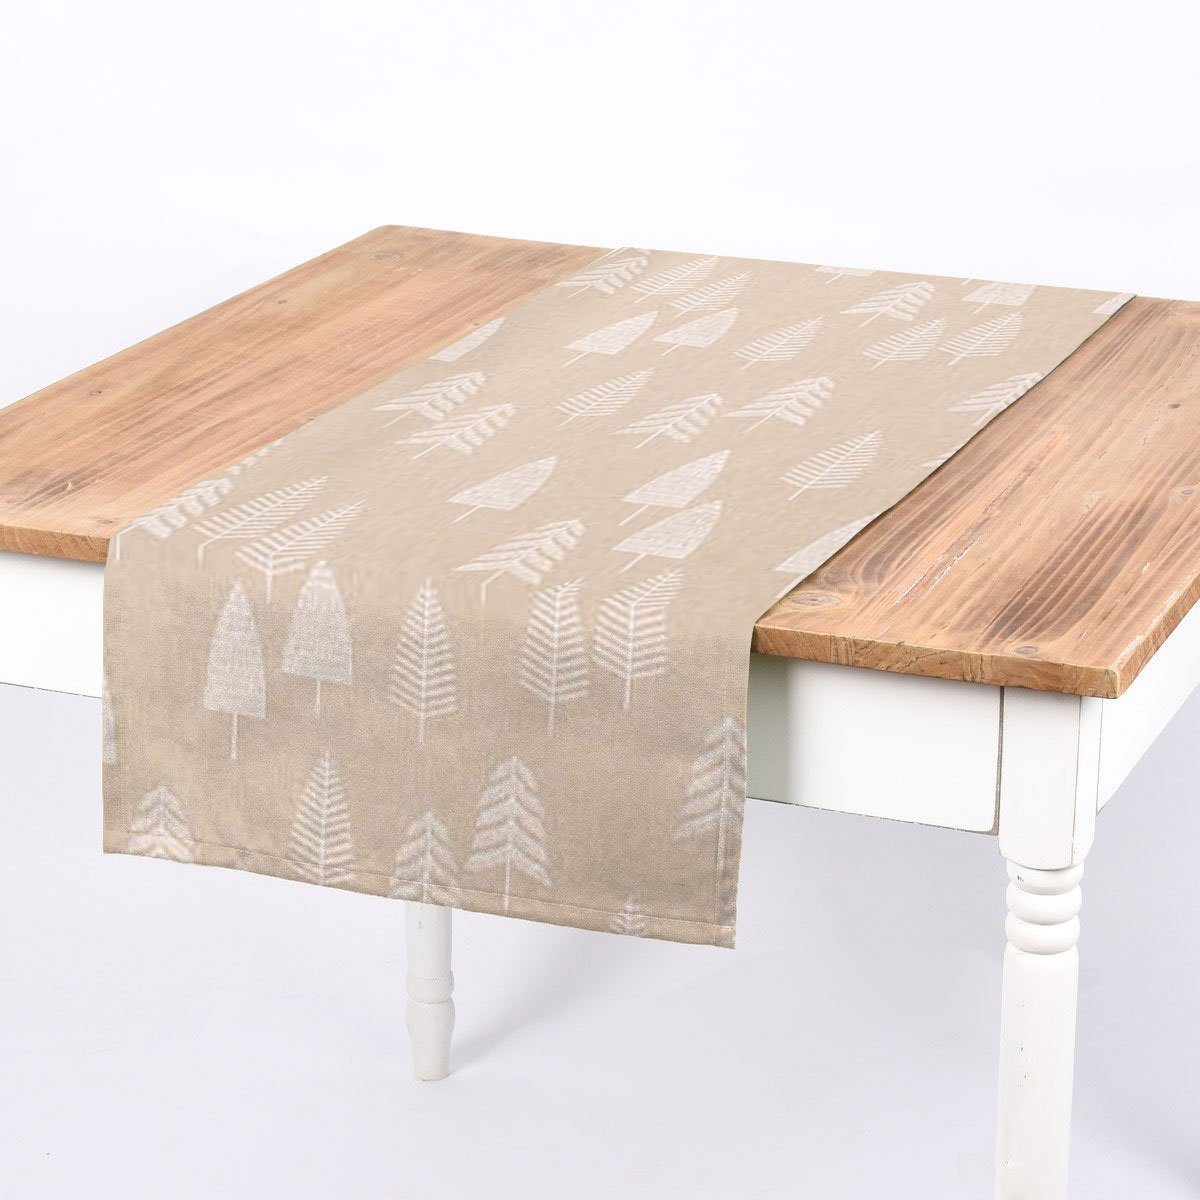 SCHÖNER LEBEN. Tischläufer SCHÖNER LEBEN. Tischläufer Forest Trees Handcraft Bäume abstrakt nat, handmade